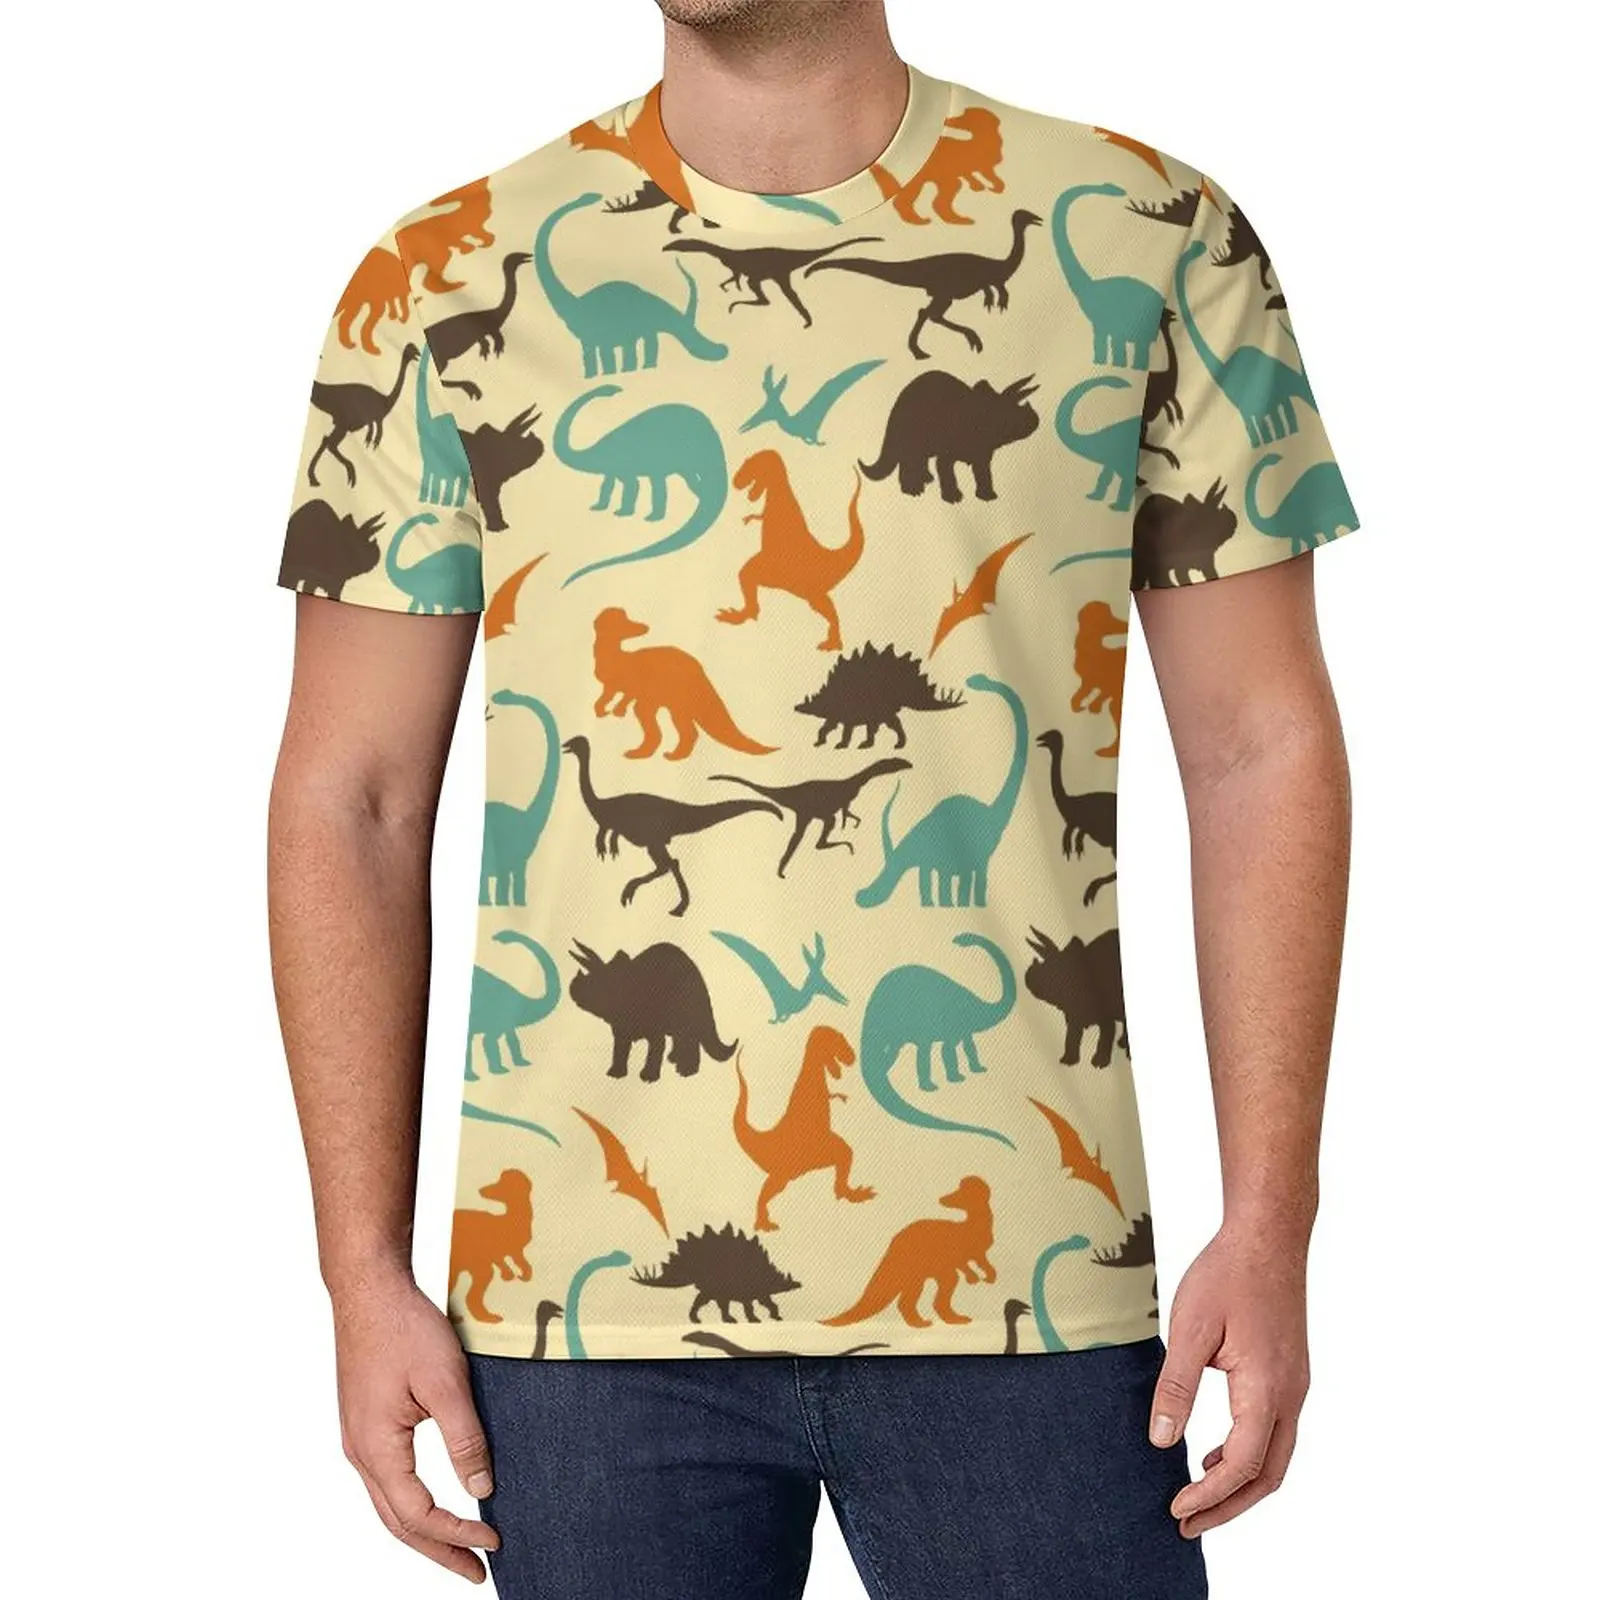 

Футболка с силуэтом динозавров, мужские веселые футболки, летняя Необычная футболка, топы большого размера с графическим рисунком